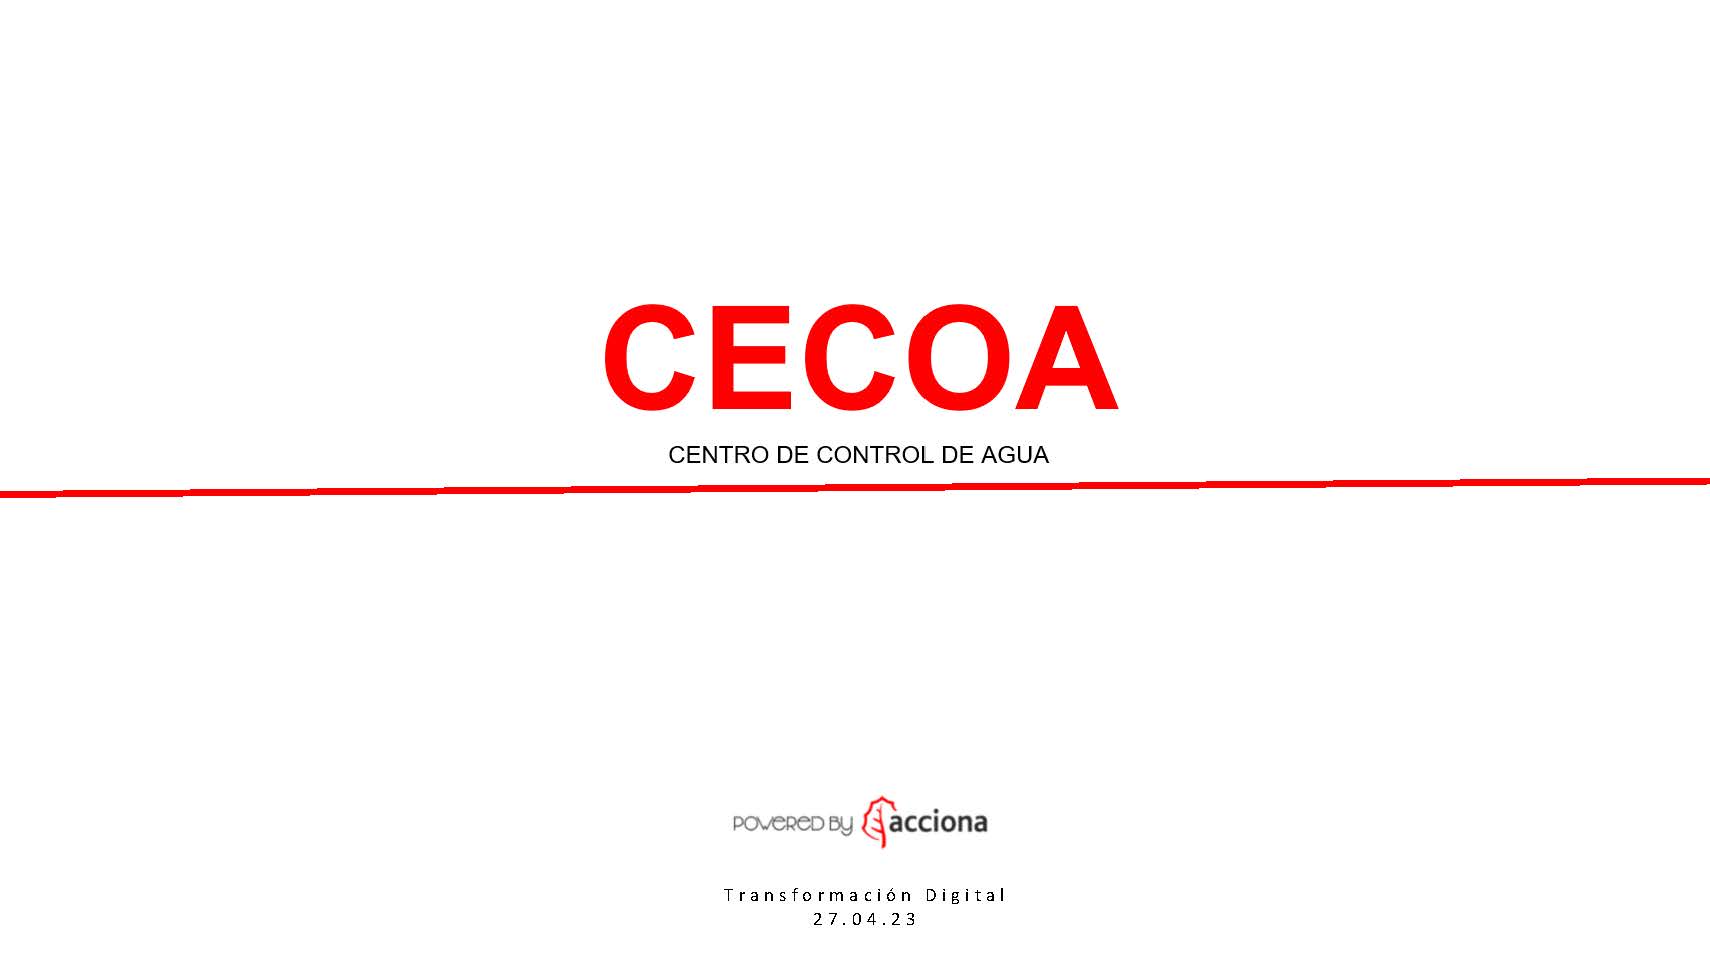 CECOA-Acciona